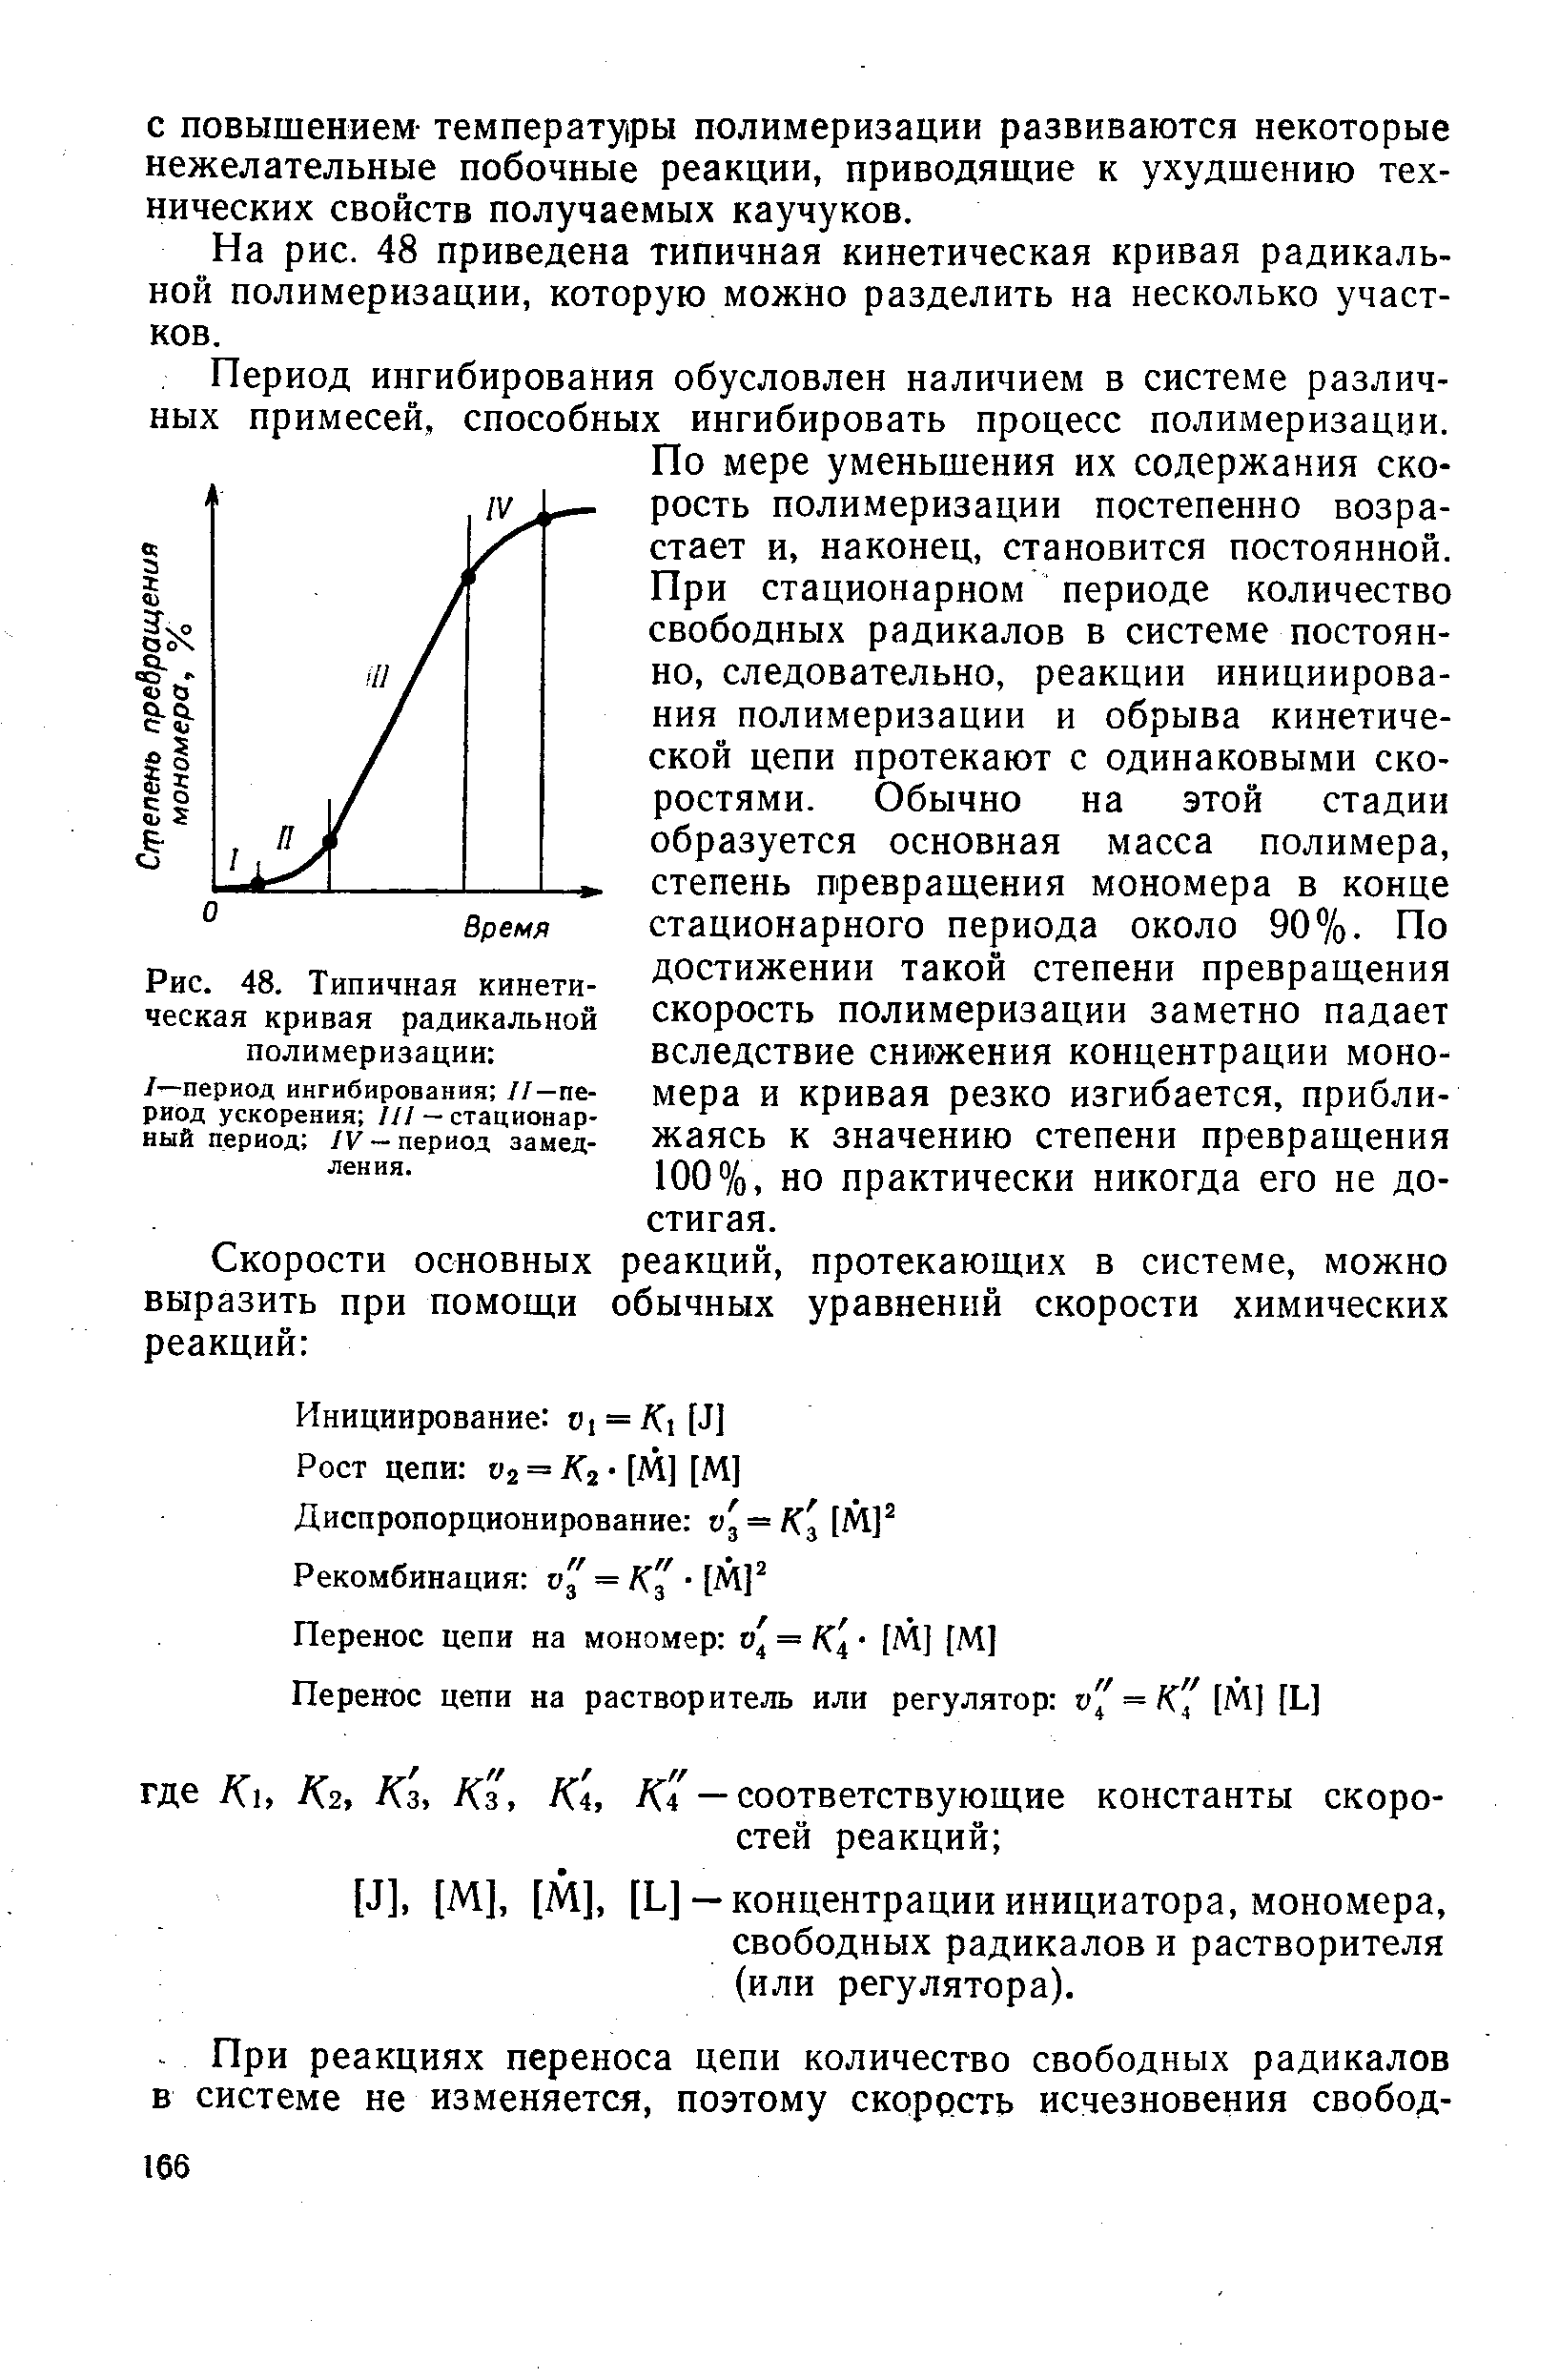 На рис. 48 приведена типичная кинетическая кривая радикальной полимеризации, которую можно разделить на несколько участков.